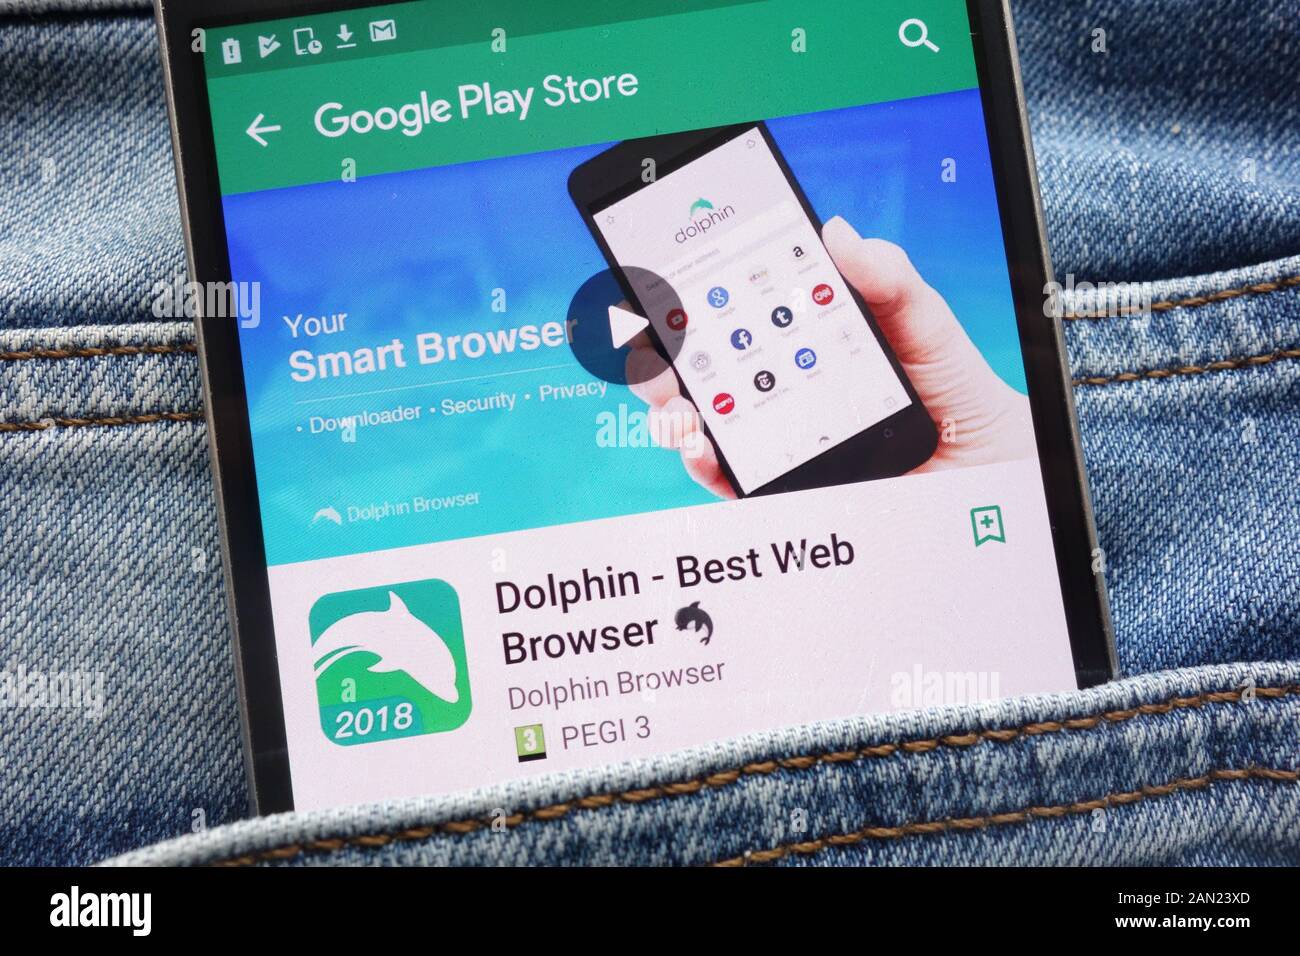 Dolphin - le meilleur navigateur Web Application sur Google Play Store affiche site web sur smartphone caché dans la poche de jeans Banque D'Images